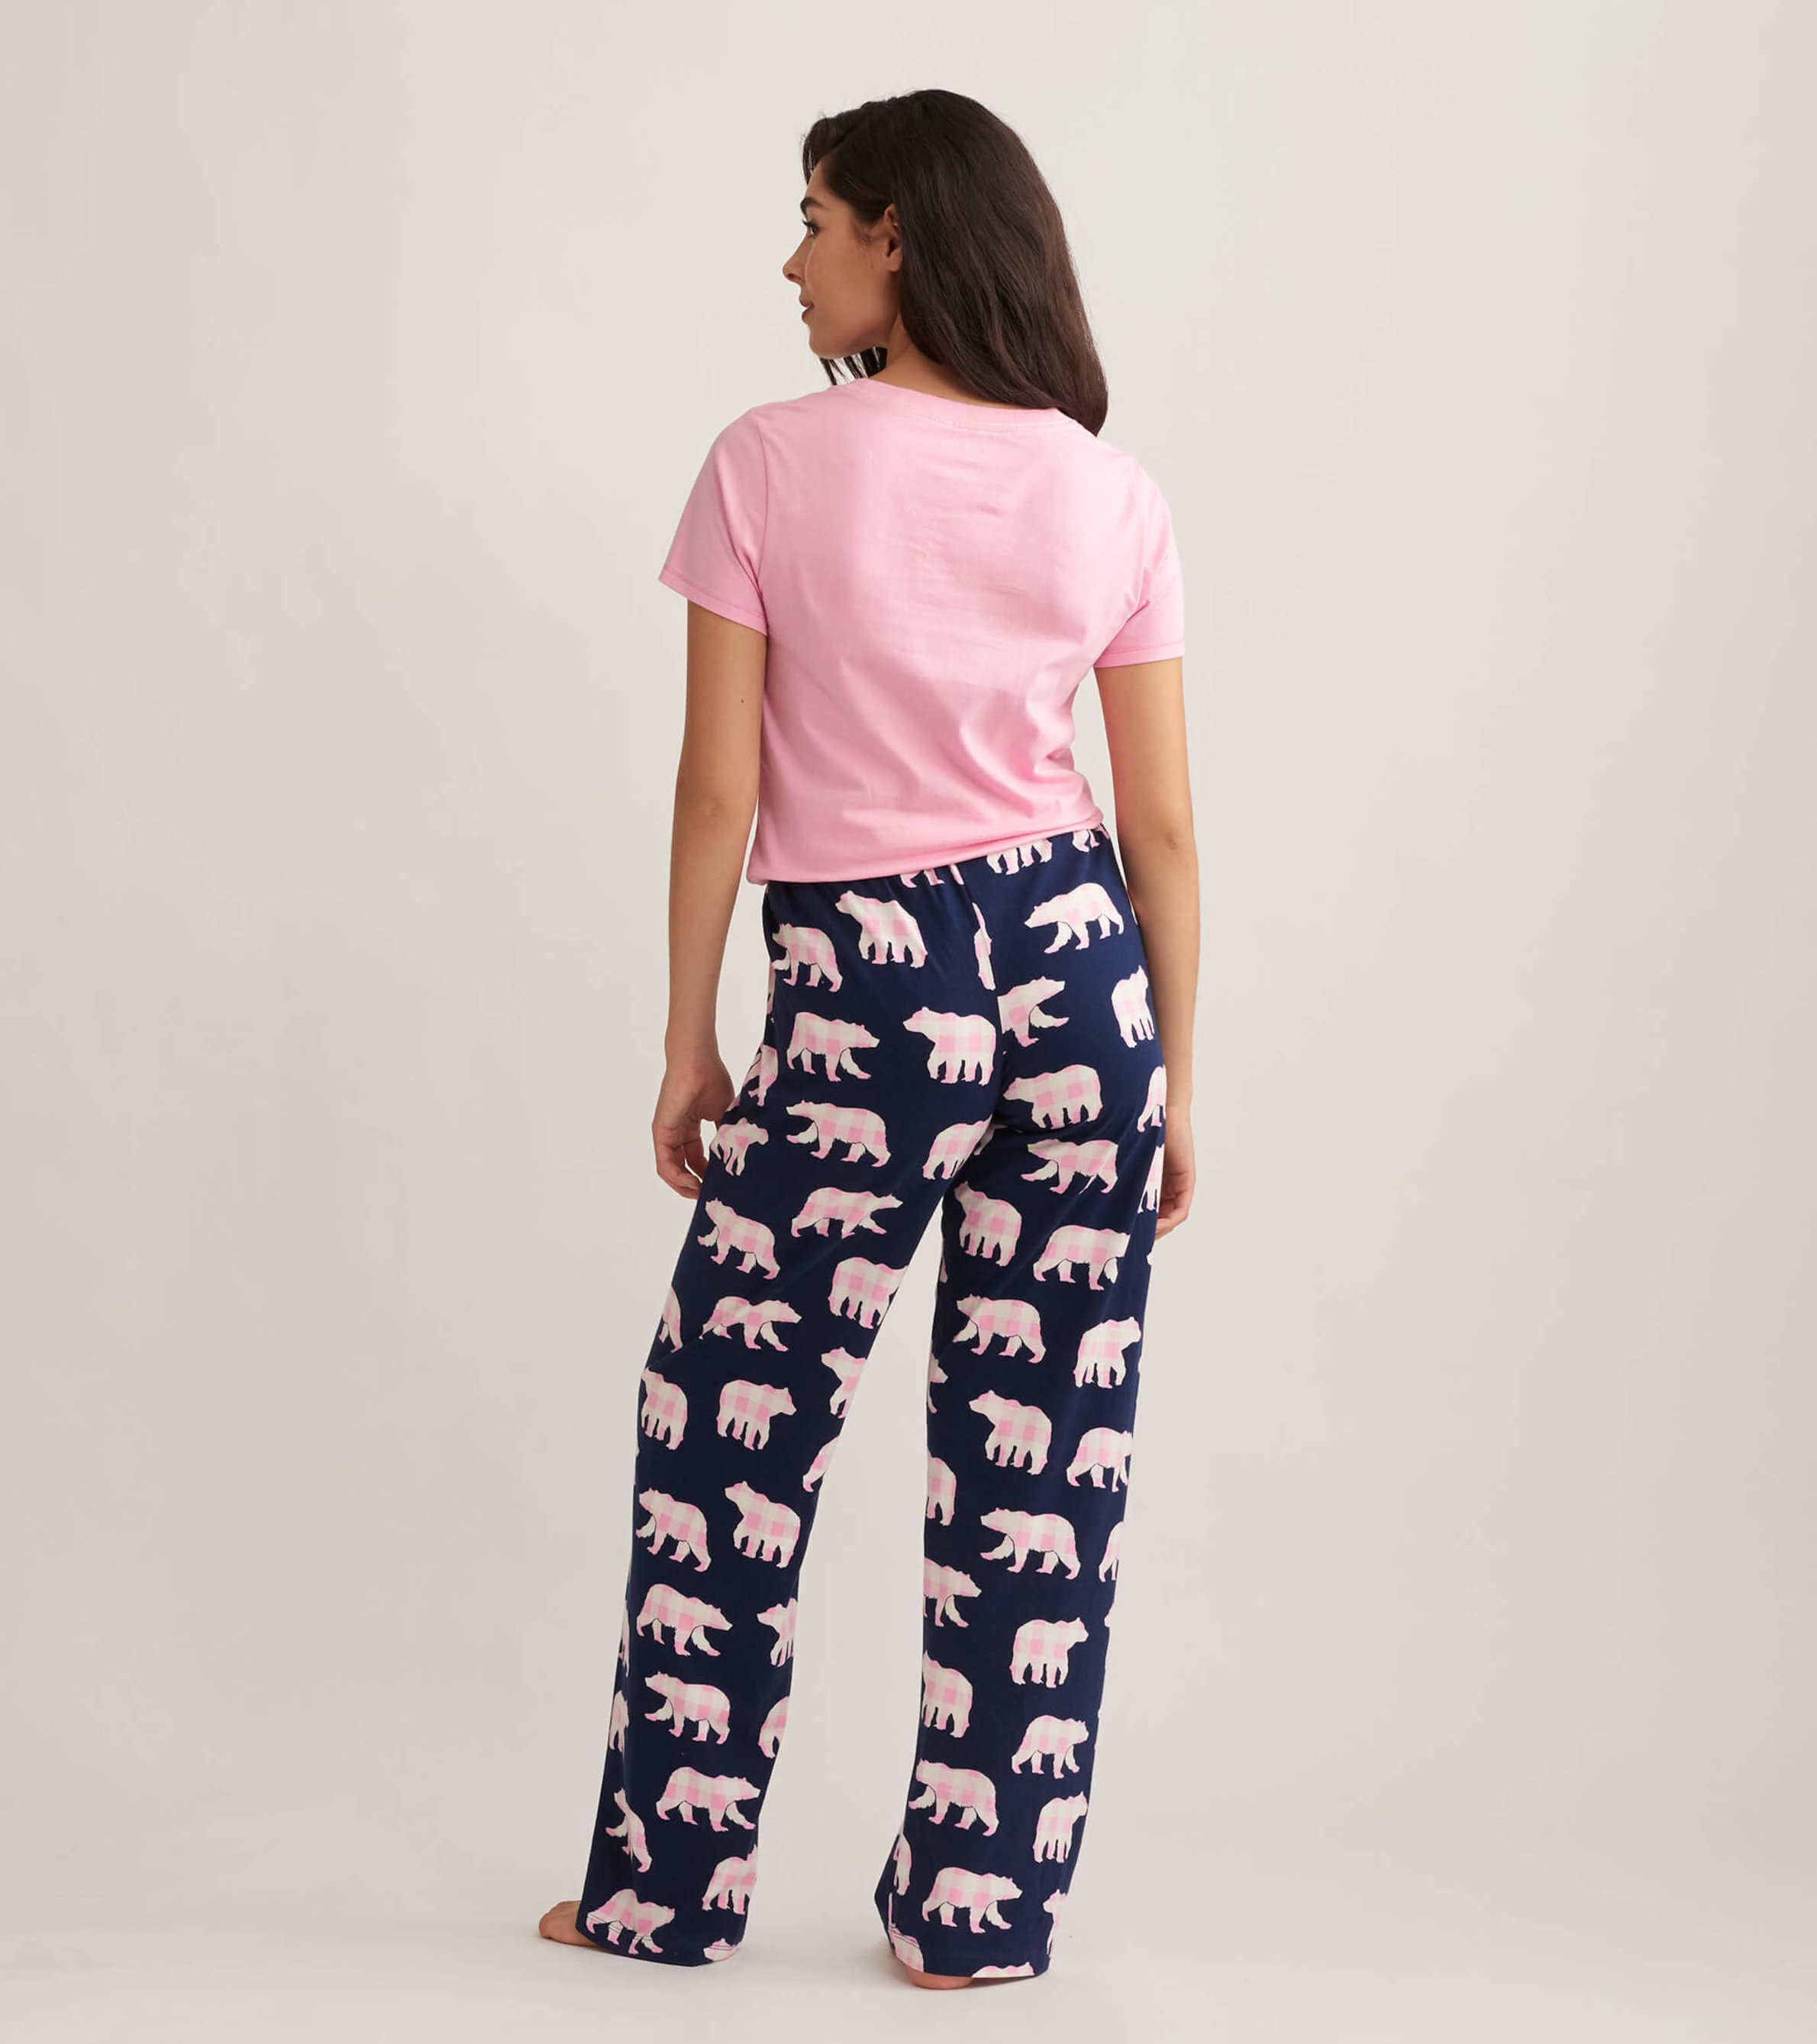 Mid-Rise Flannel Pajama Pants for Women | Old Navy | Pajama pants outfit, Pajama  pants, Christmas pj pants